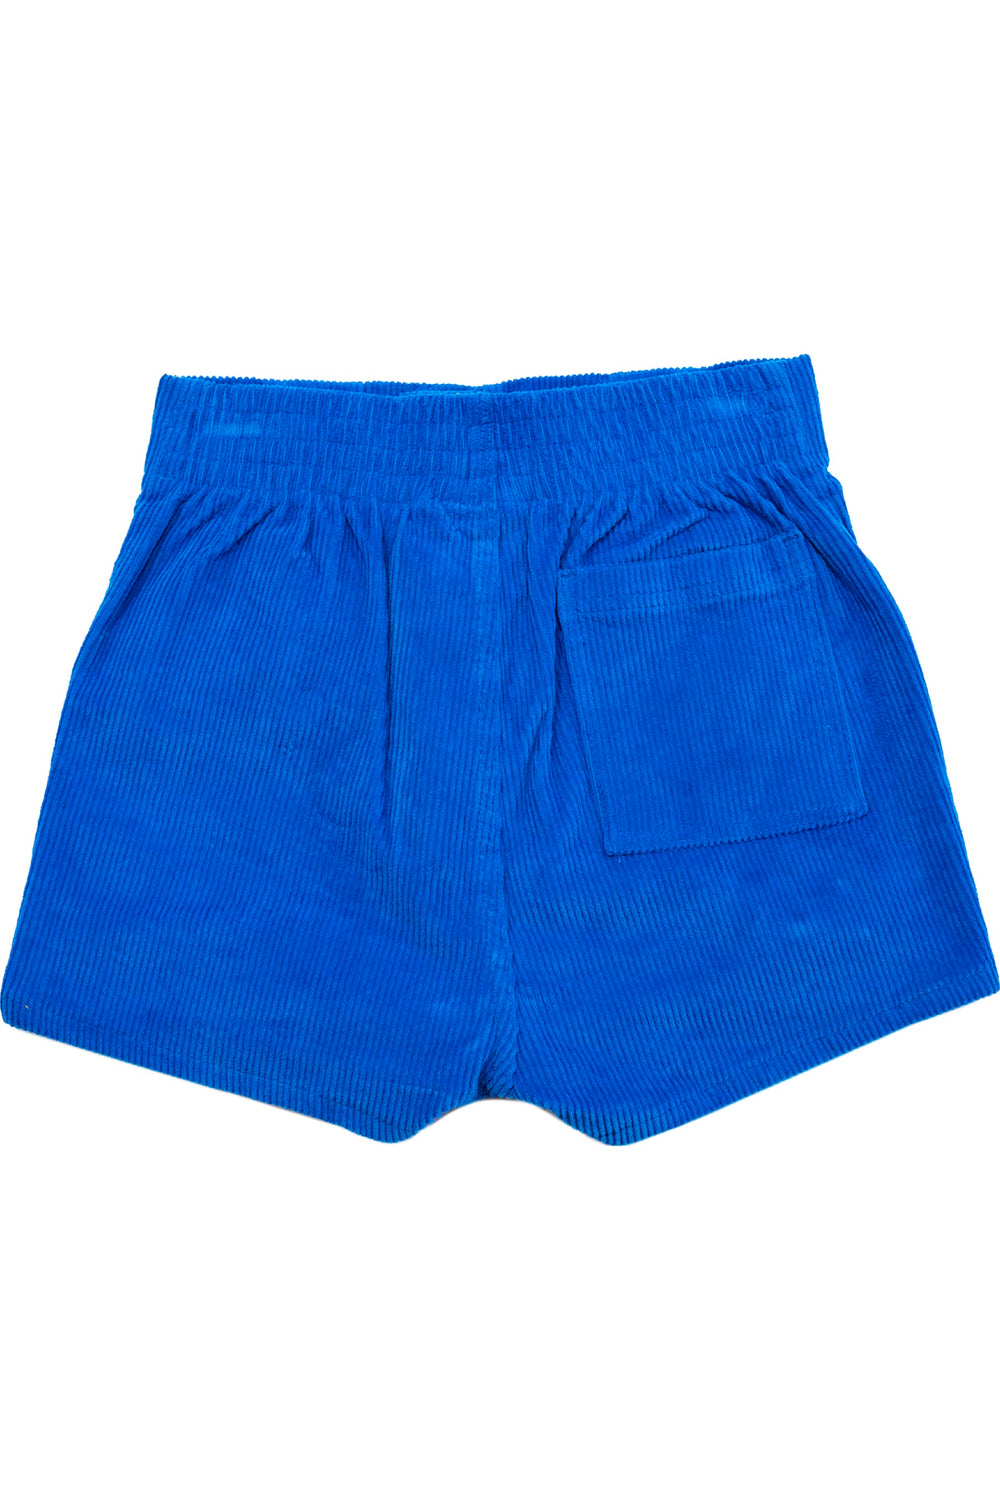 Blue Hammies Shorts — Prism Boutique